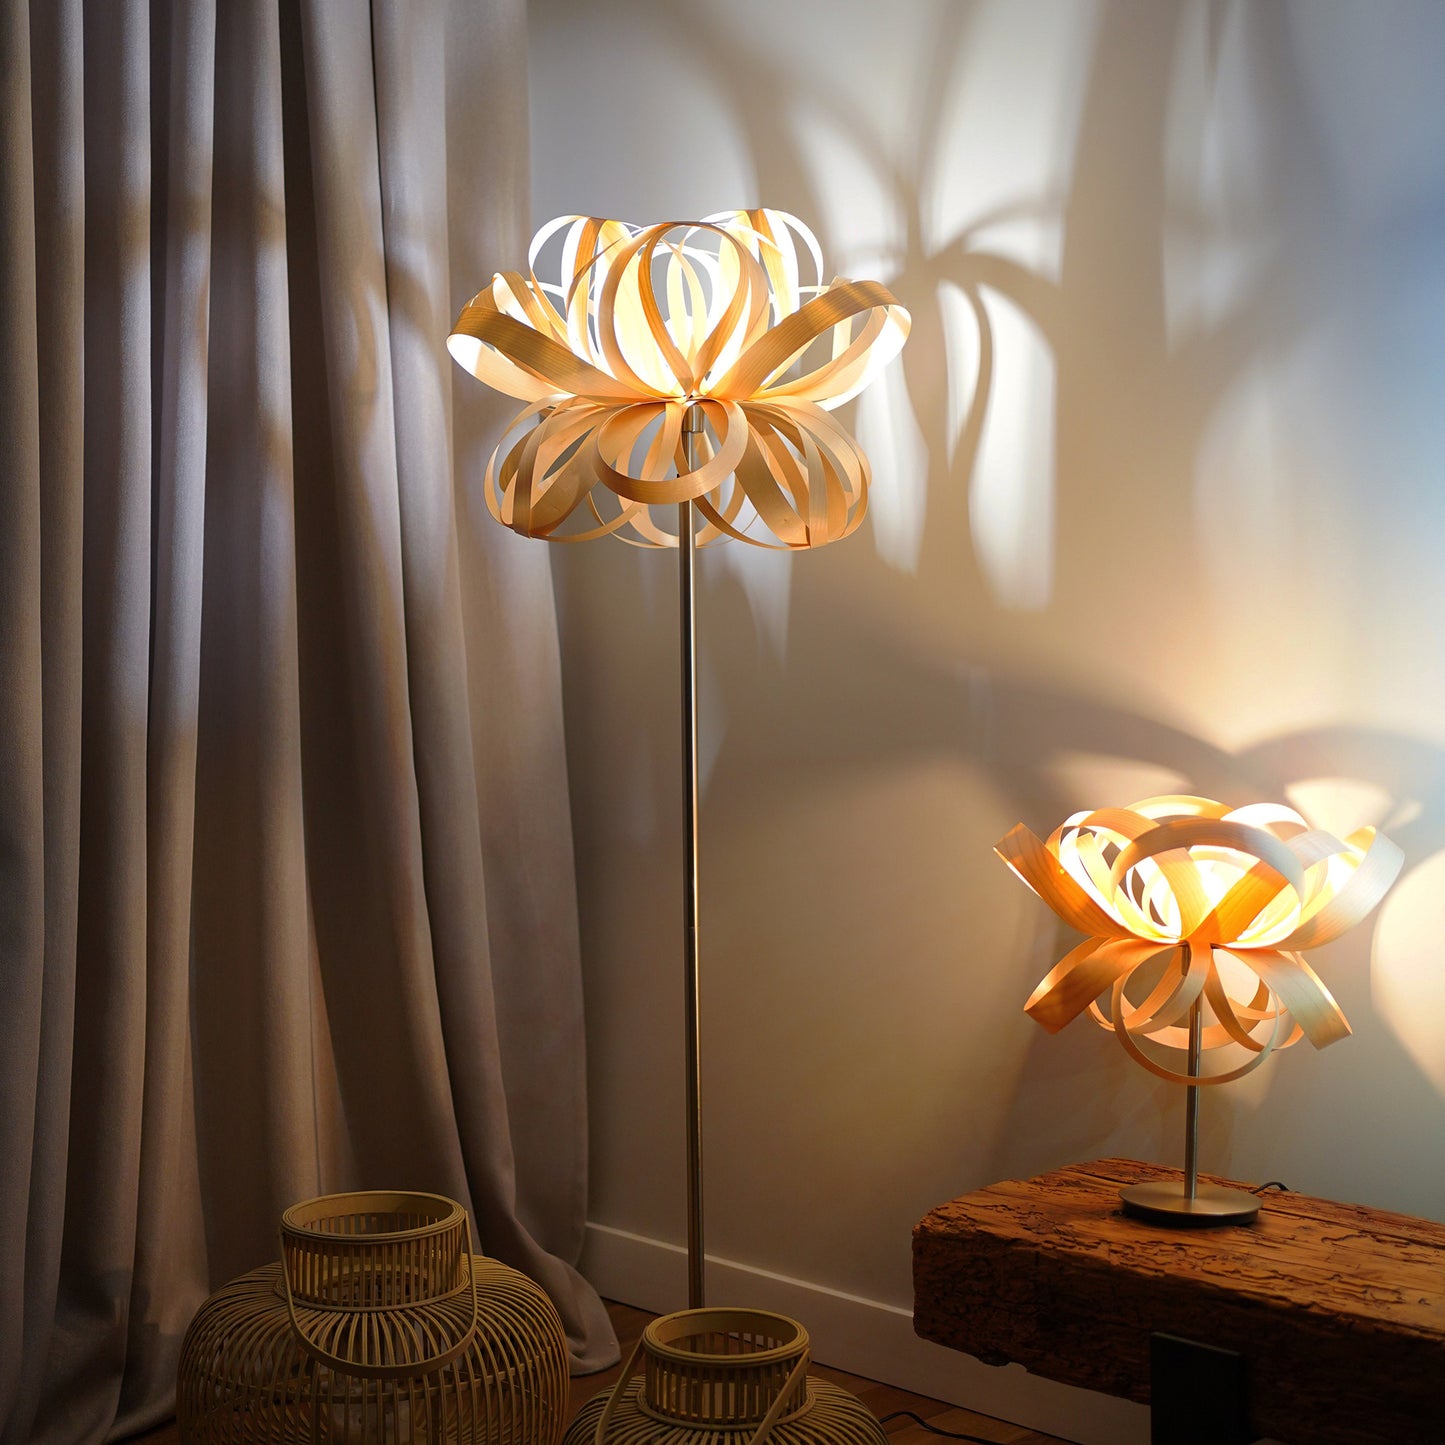 Lampadar din furnir creat manual - lumina ambientala pentru casa ta